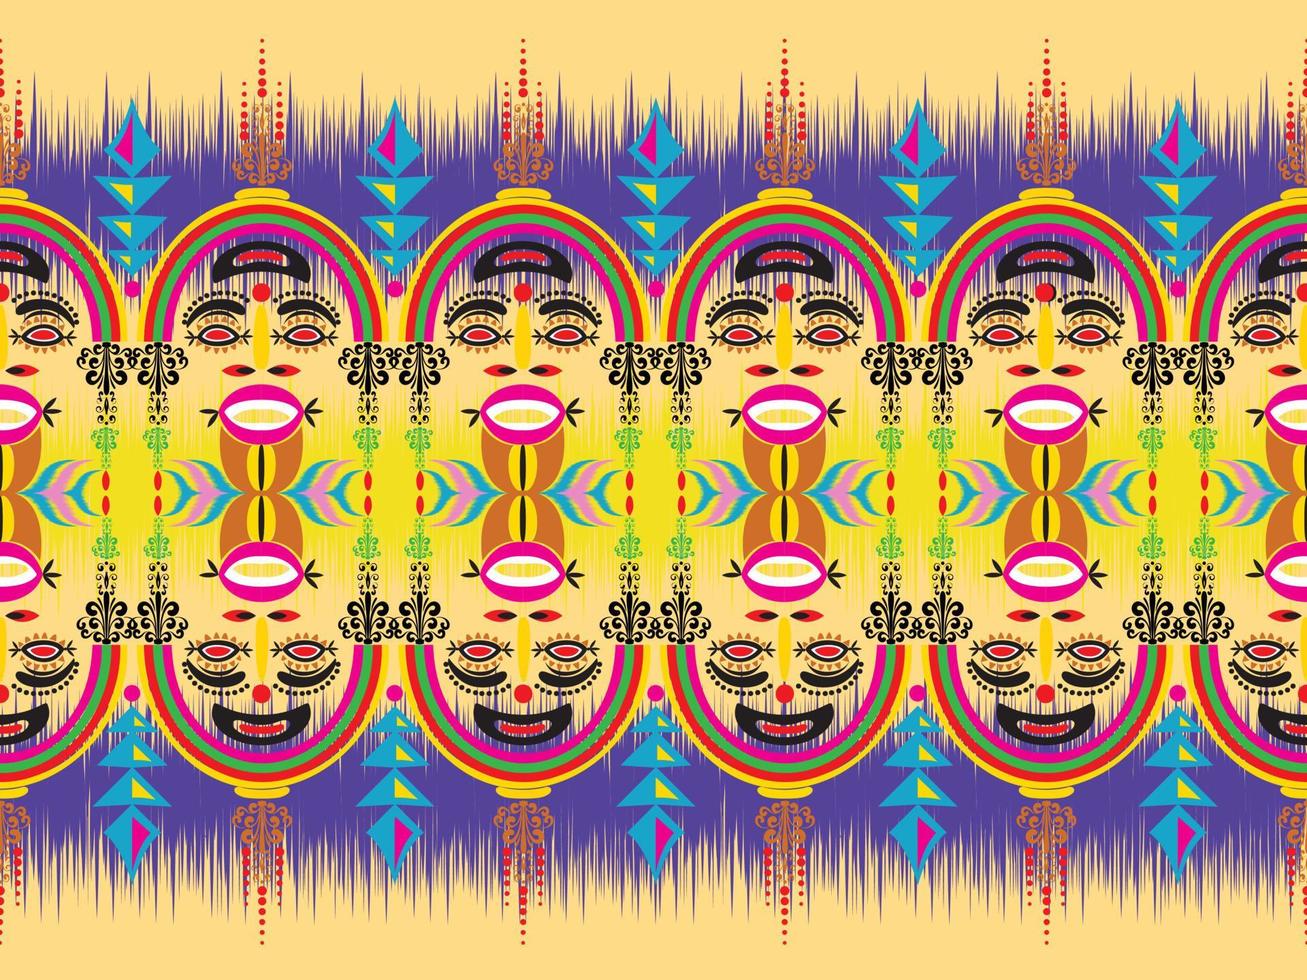 traditioneel etnisch meetkundig patroon achtergrond ontwerp voor achtergronden tapijt behang kleren inpakken kleding stof naadloos borduurwerk stijl vector illustratie